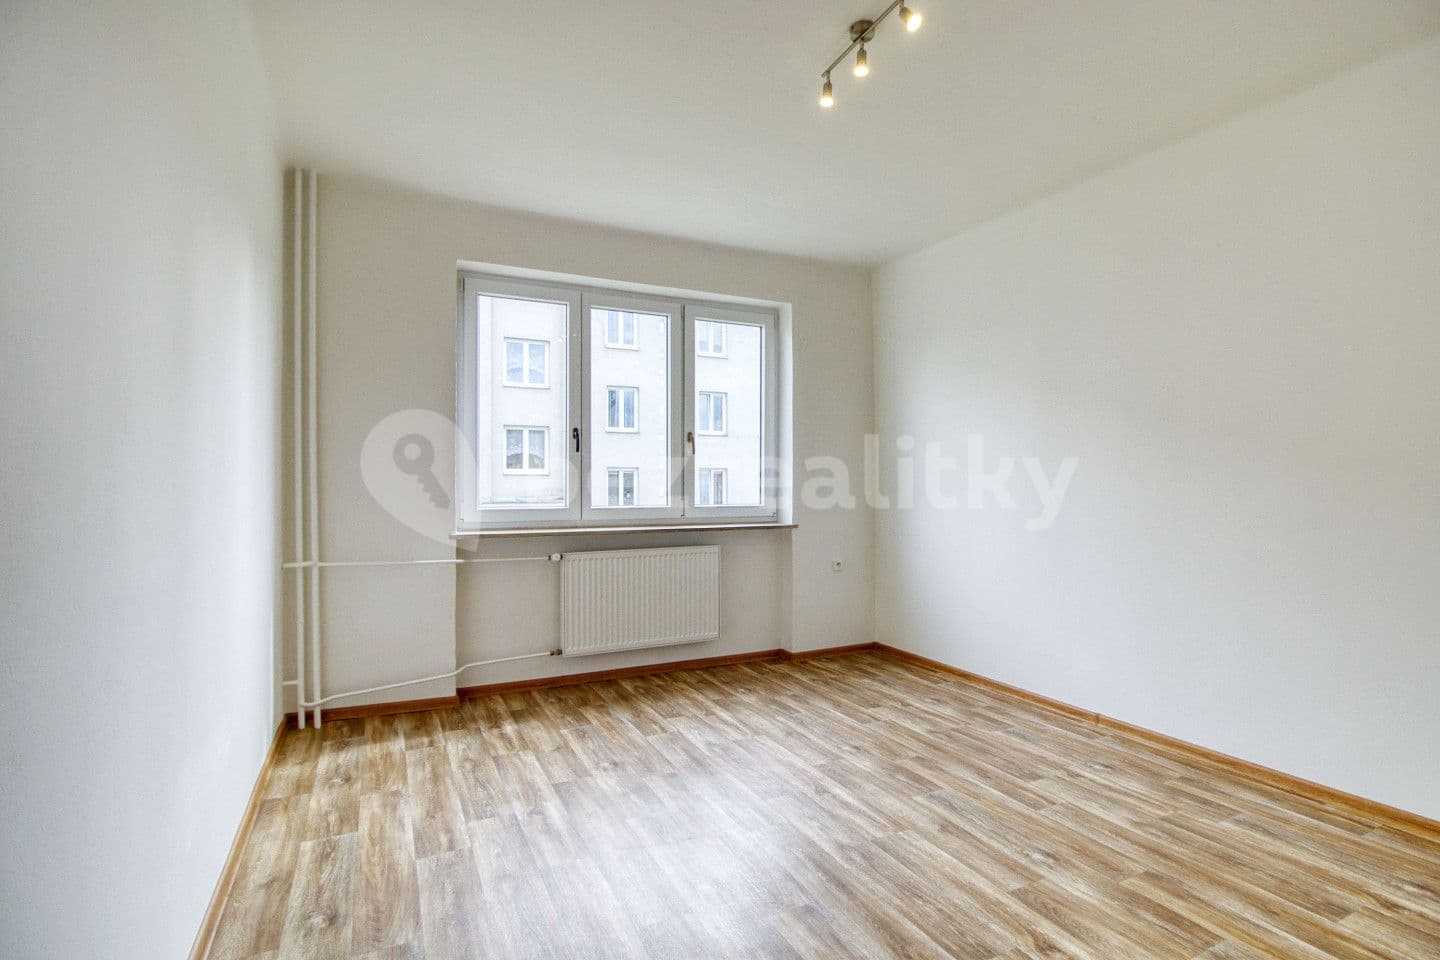 3 bedroom flat for sale, 69 m², Osvračín, Plzeňský Region